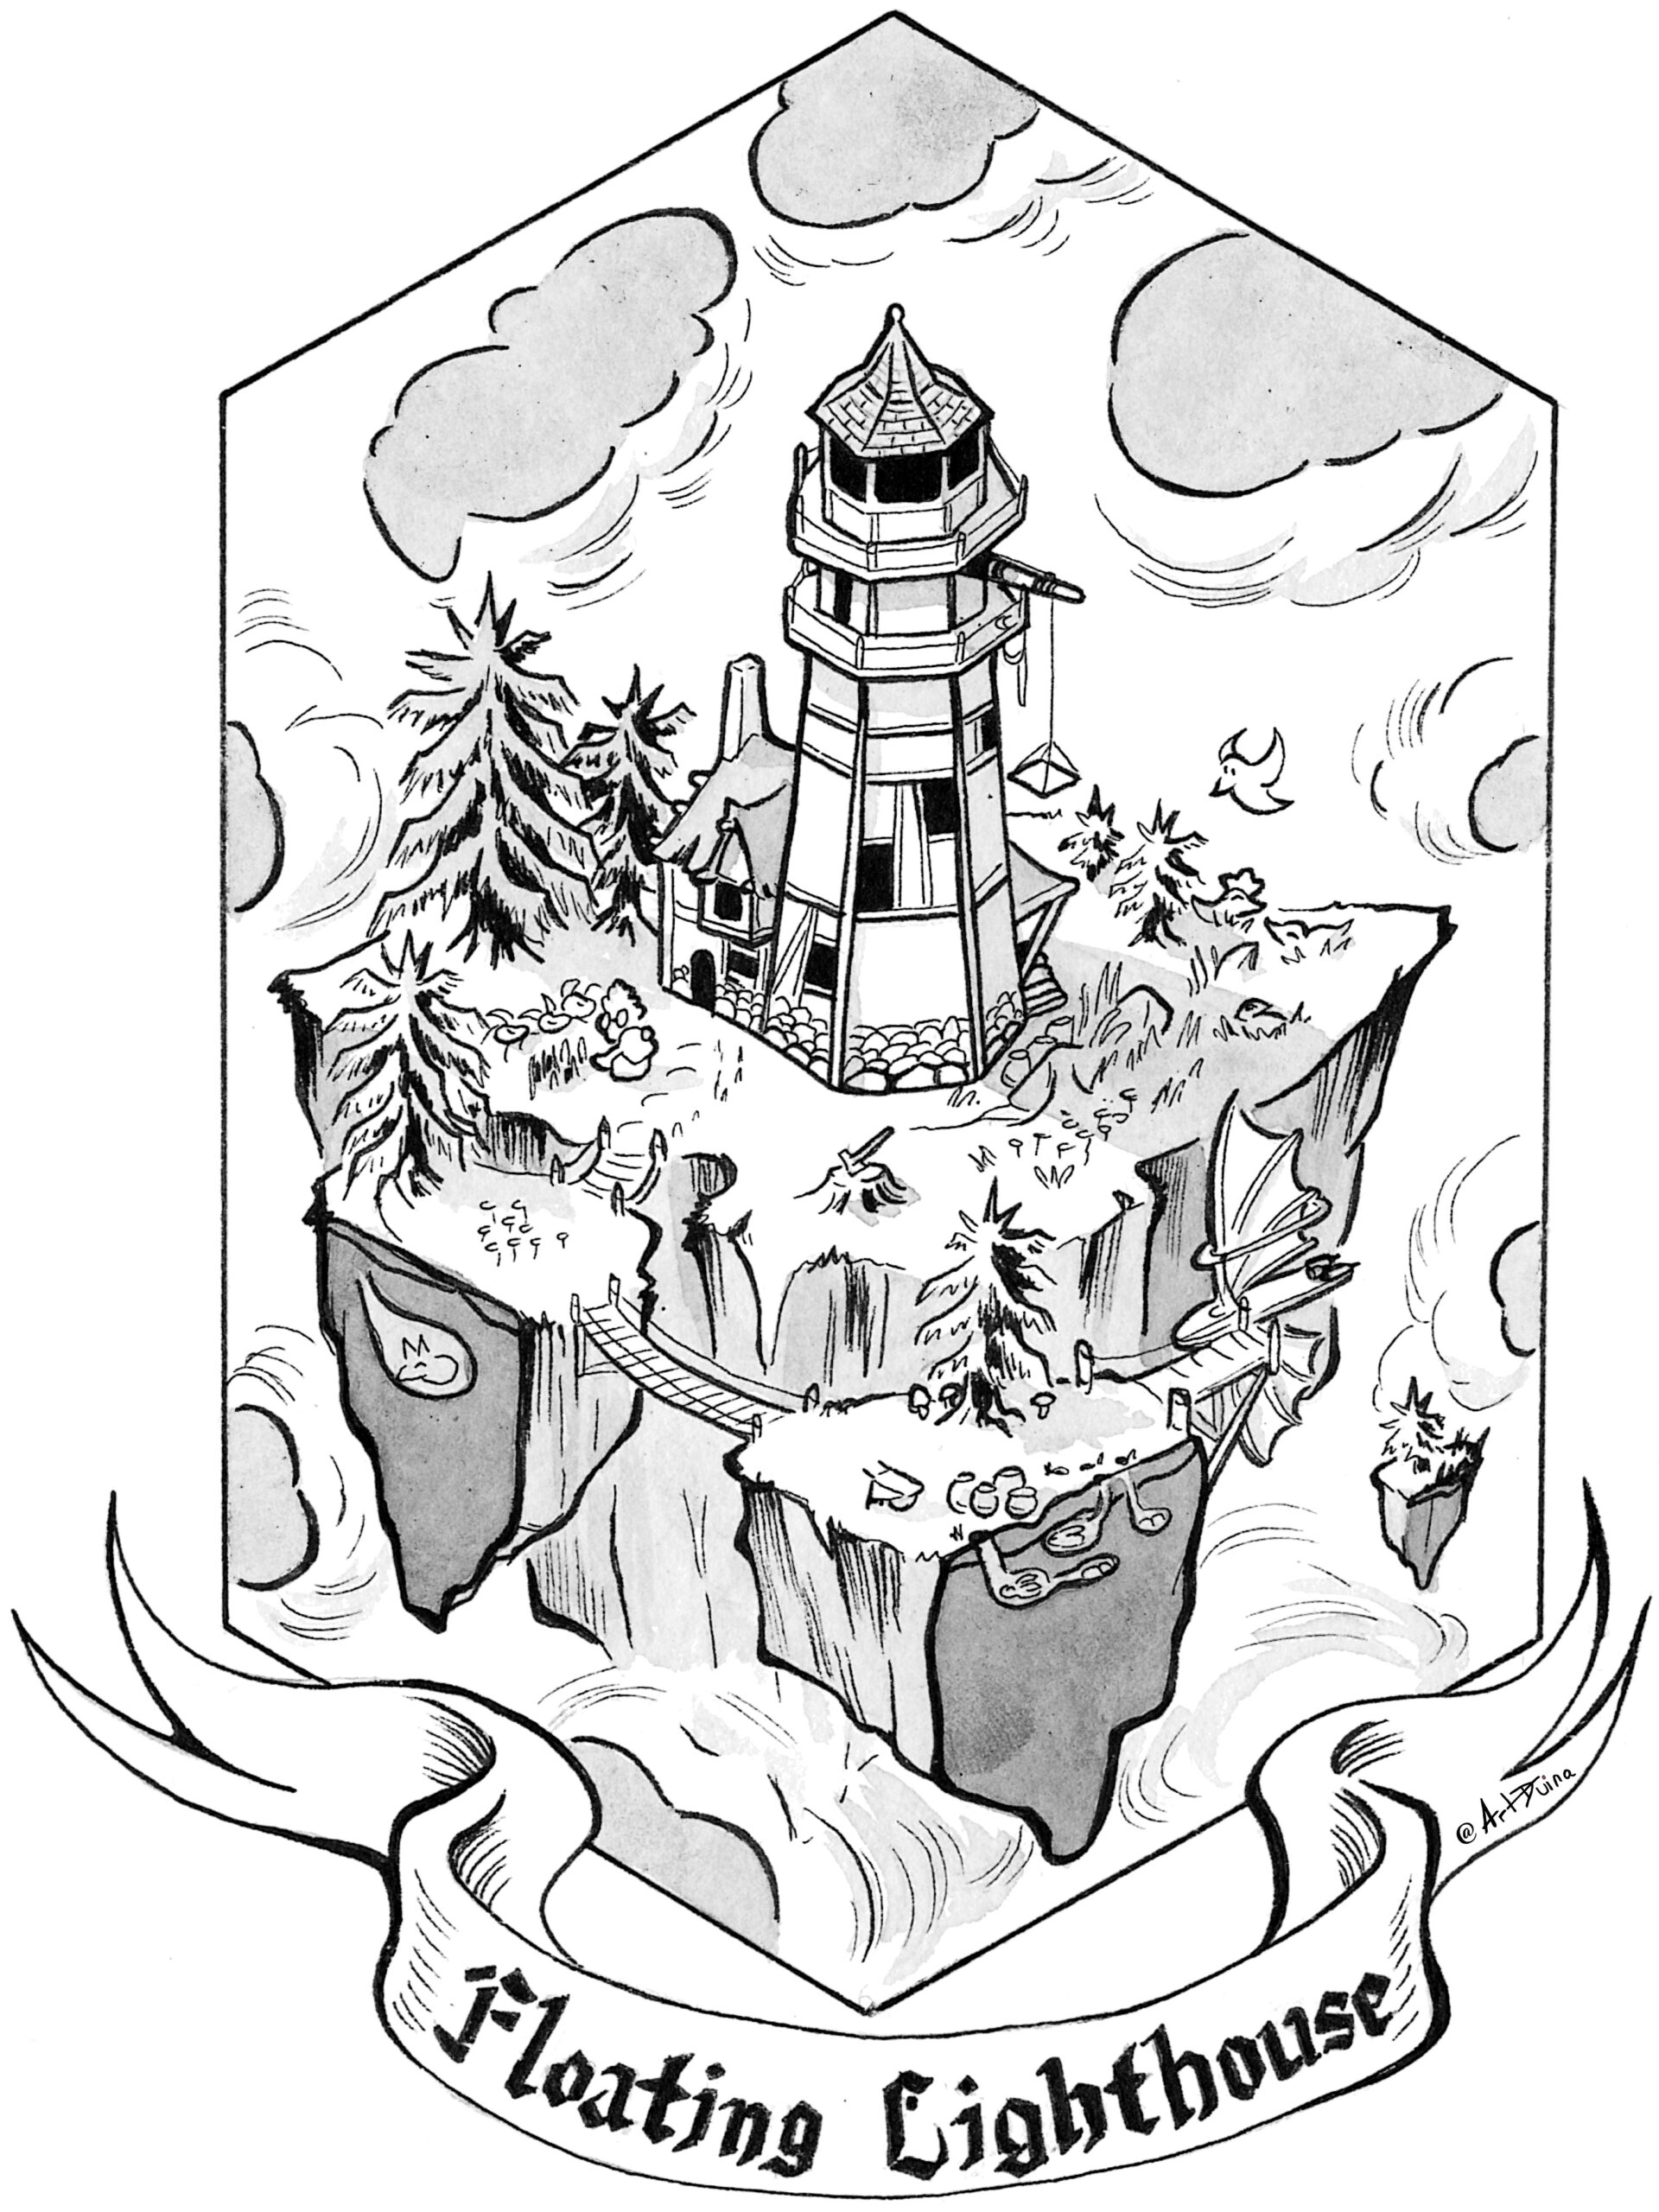 05 - Floating Lighthouse